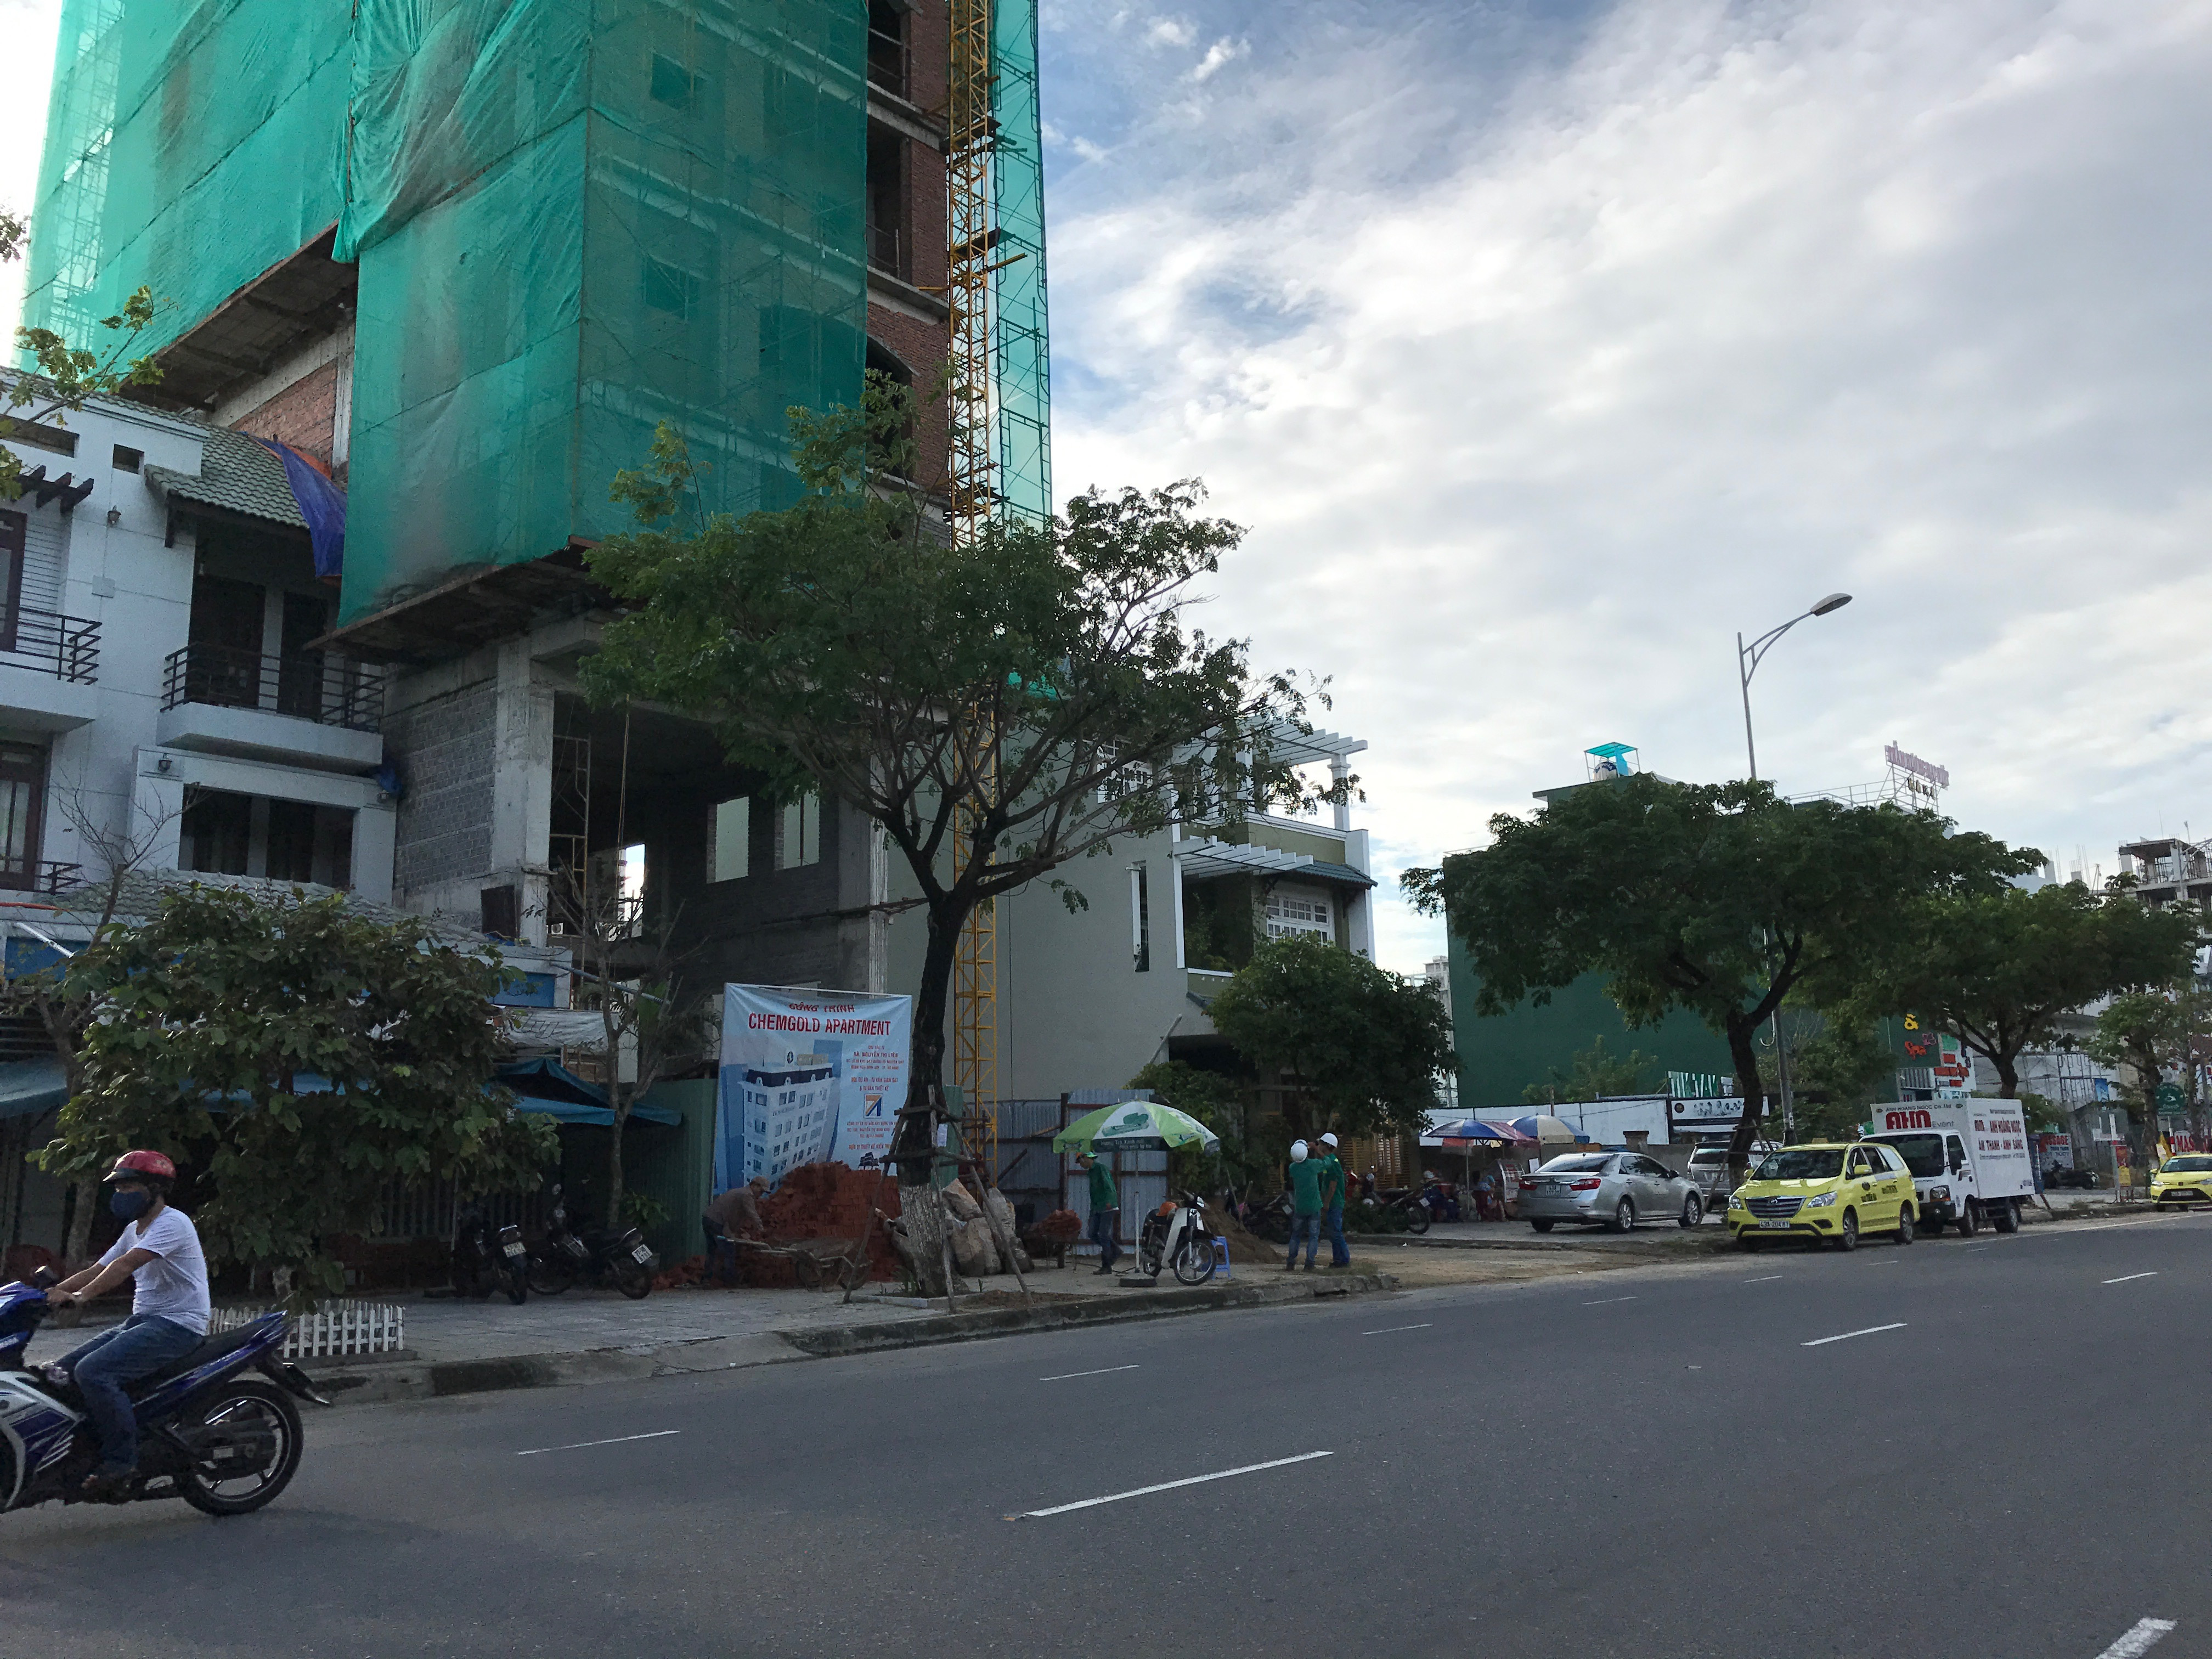 
Nóng nhất phải kể đến tuyến đường Trường Sa, con đường ôm trọn bờ biển đẹp của thành phố Đà Nẵng. Nơi đây, chỉ một đoạn đường ngắn khoảng 2km, chúng tôi đã chứng kiến được 15 khách sạn 3-5 sao đang hối hả xây dựng.
